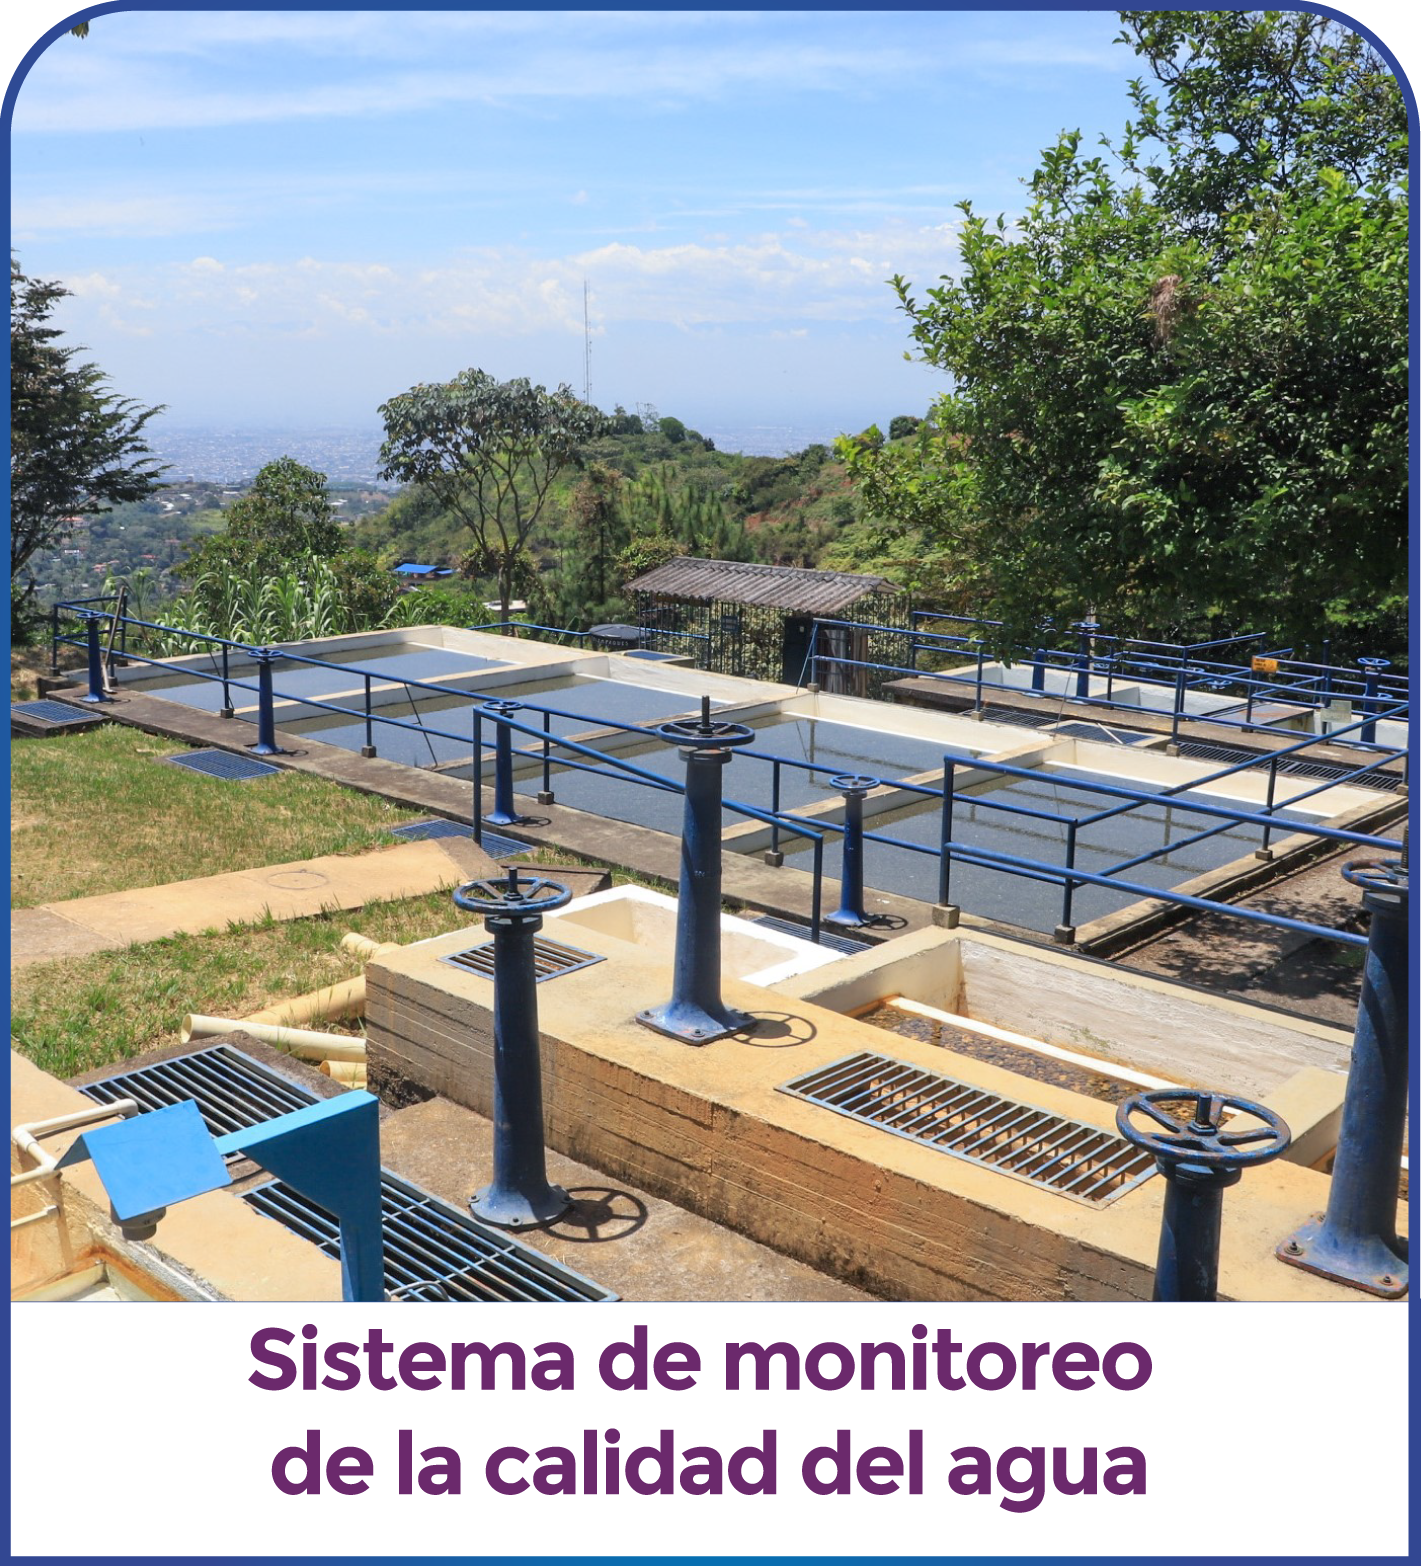 Sistema de monitoreo de la calidad del agua